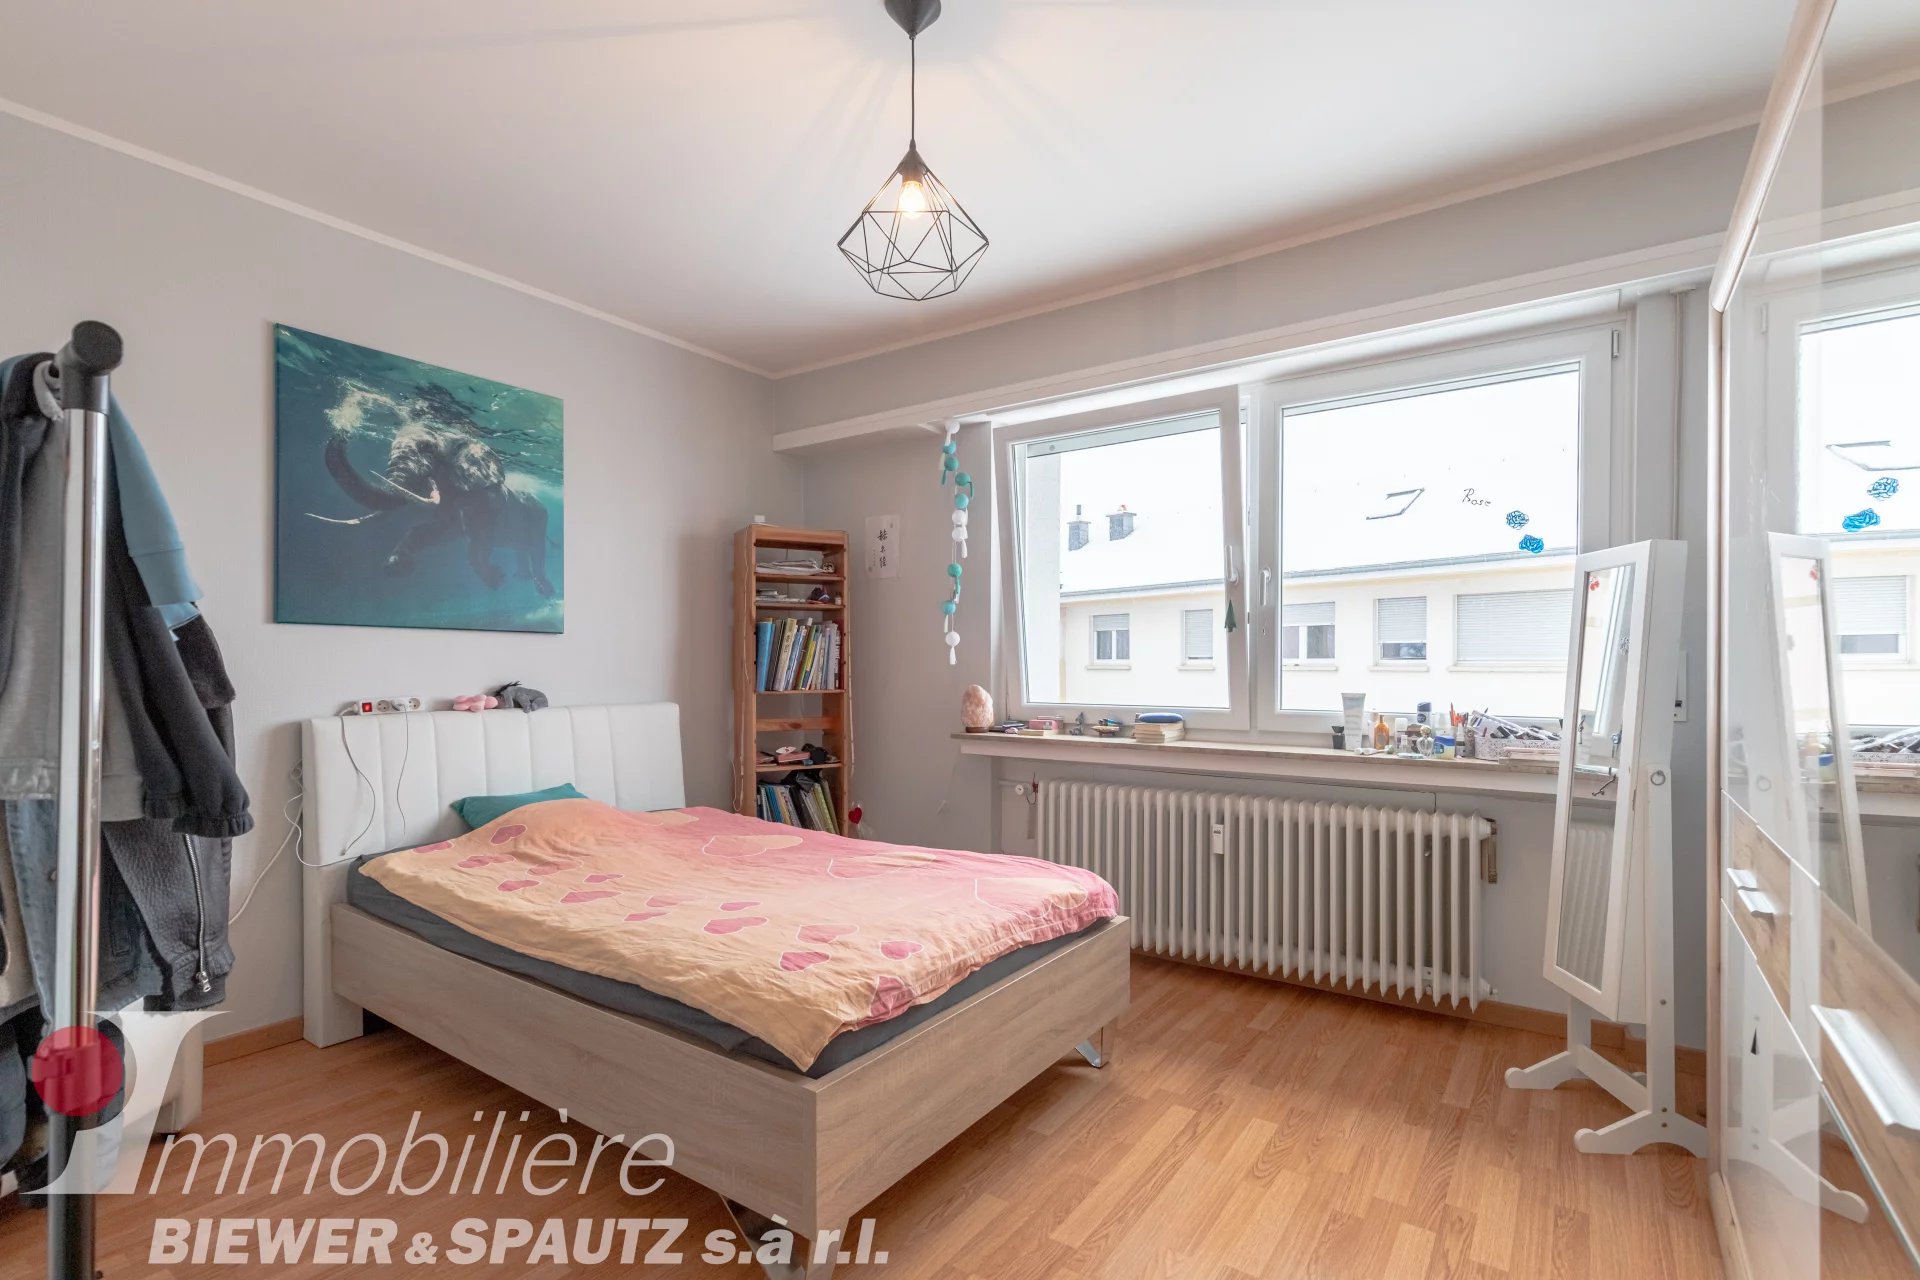 UNDER SALES AGREEMENT - 2 bedroom flat in Junglinster